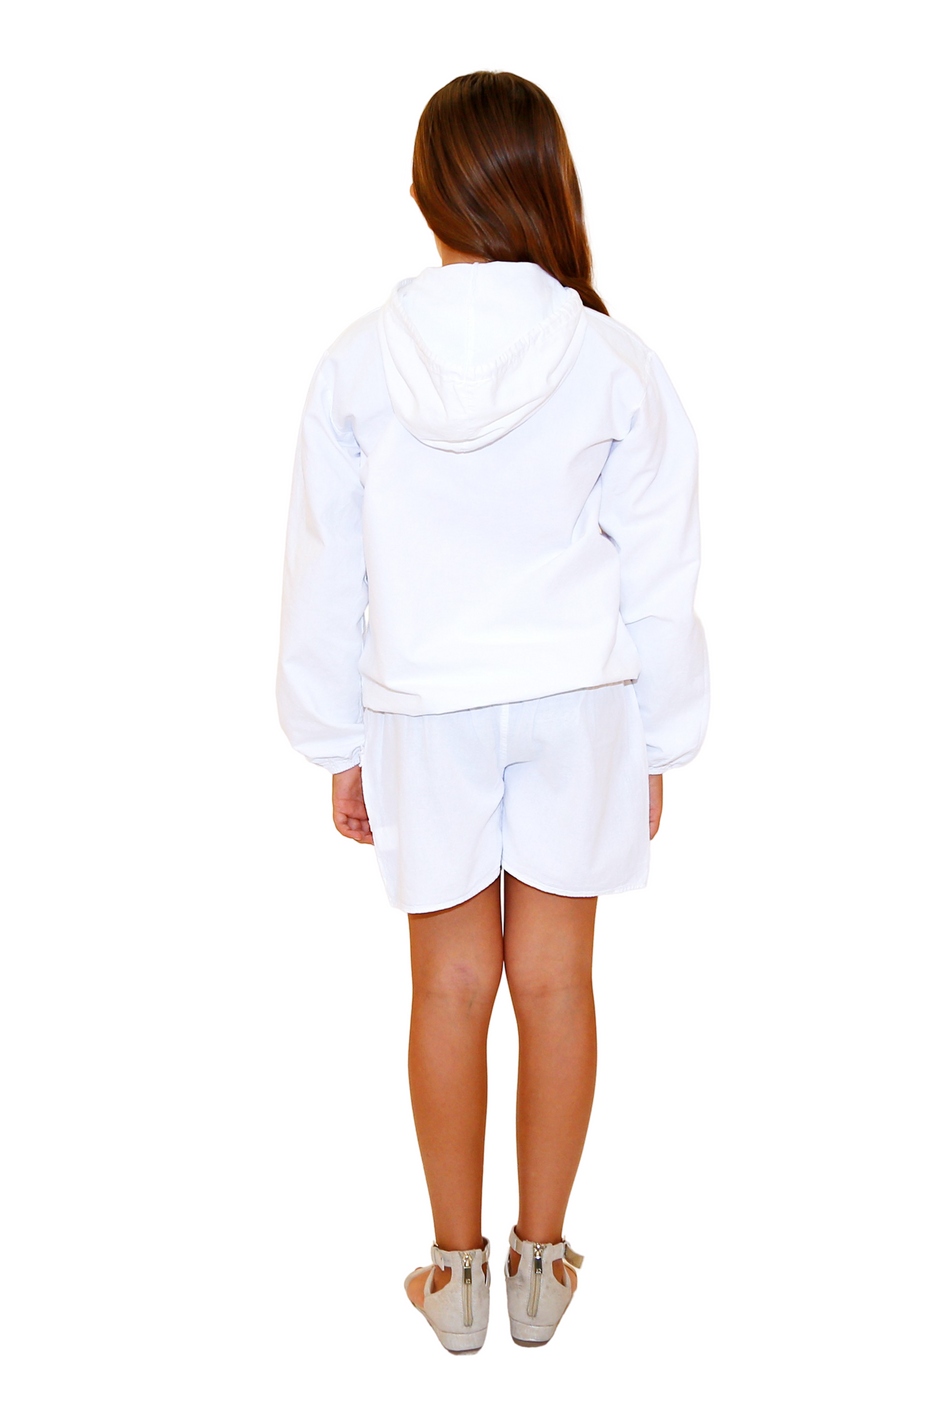 G1008 - White Cotton Shorts